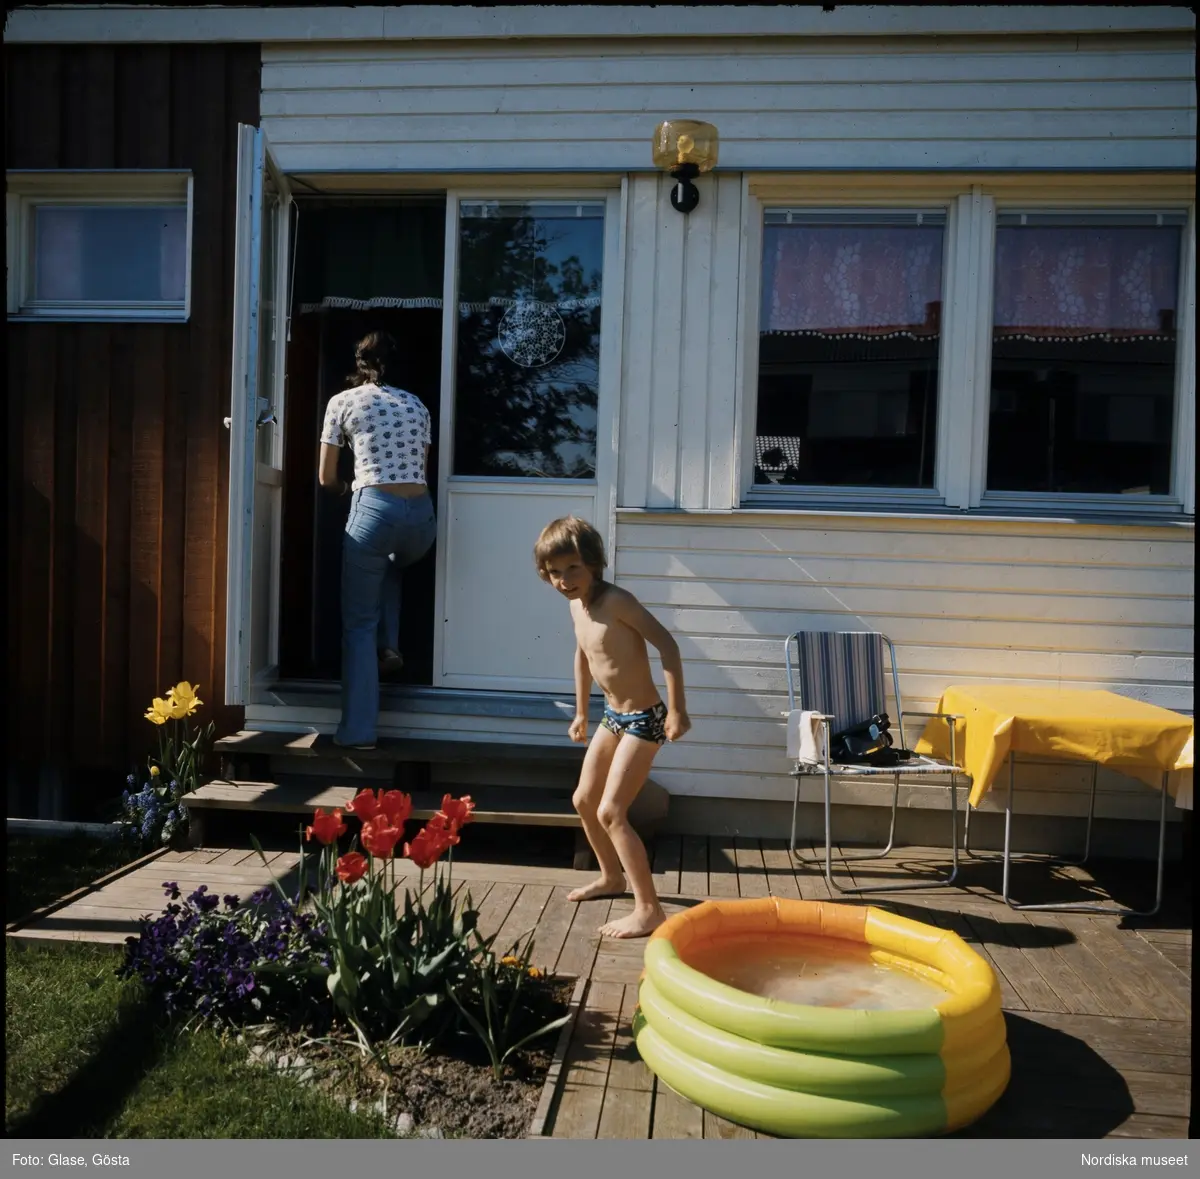 Uppblåsbar pool på radhusaltan. Ett barn står berett att bada, en kvinna påväg in i huset.